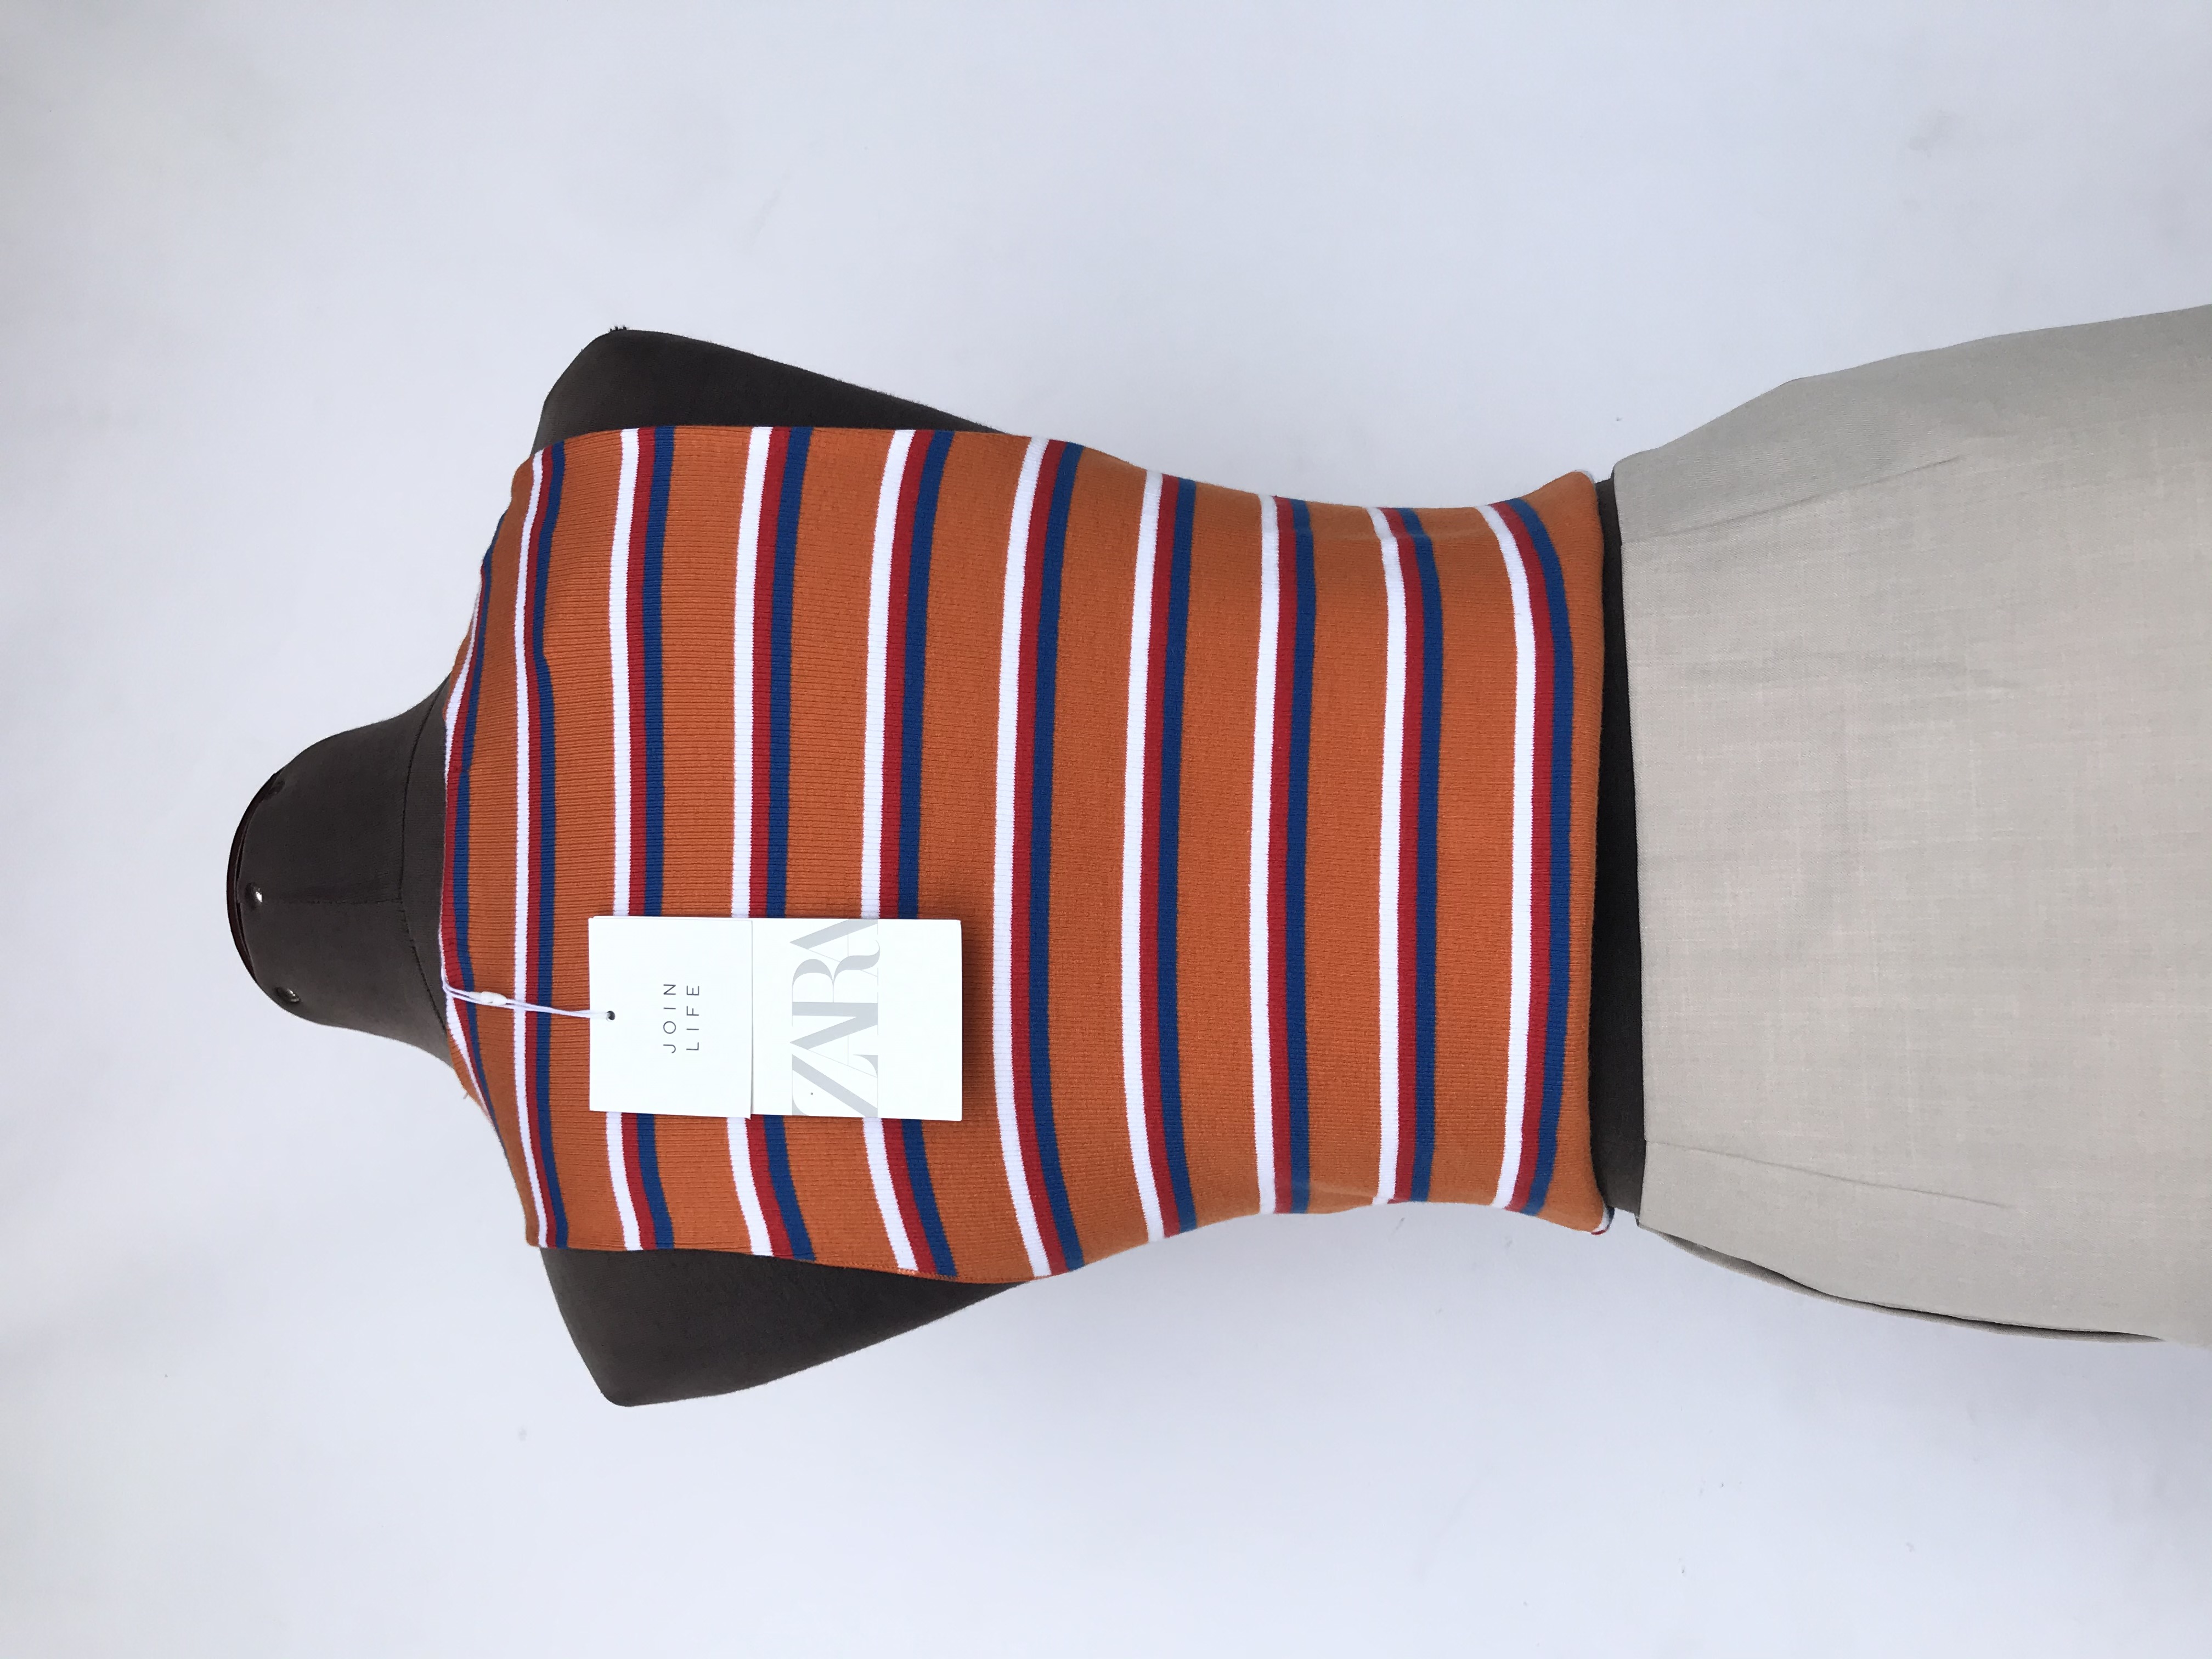 Top Zara naranja con rayas blancas y azules, textura acanalada, 95% algodón ecológico. Nuevo con etiqueta S/ 69
Talla M